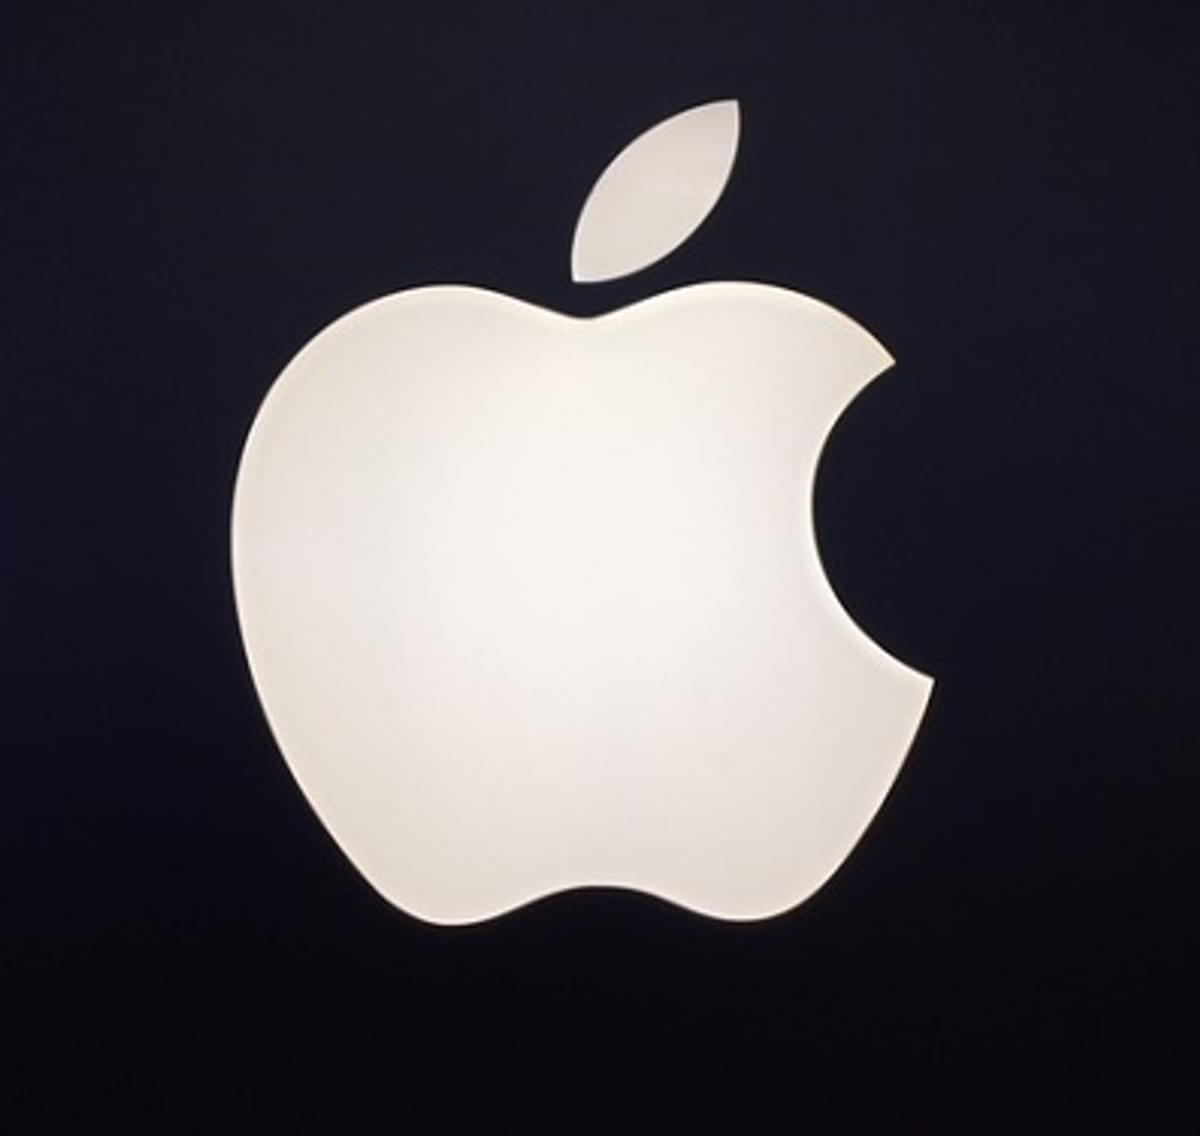 Lab9 opent de eerste Apple Premium Partner belevingswinkel in Brussel image